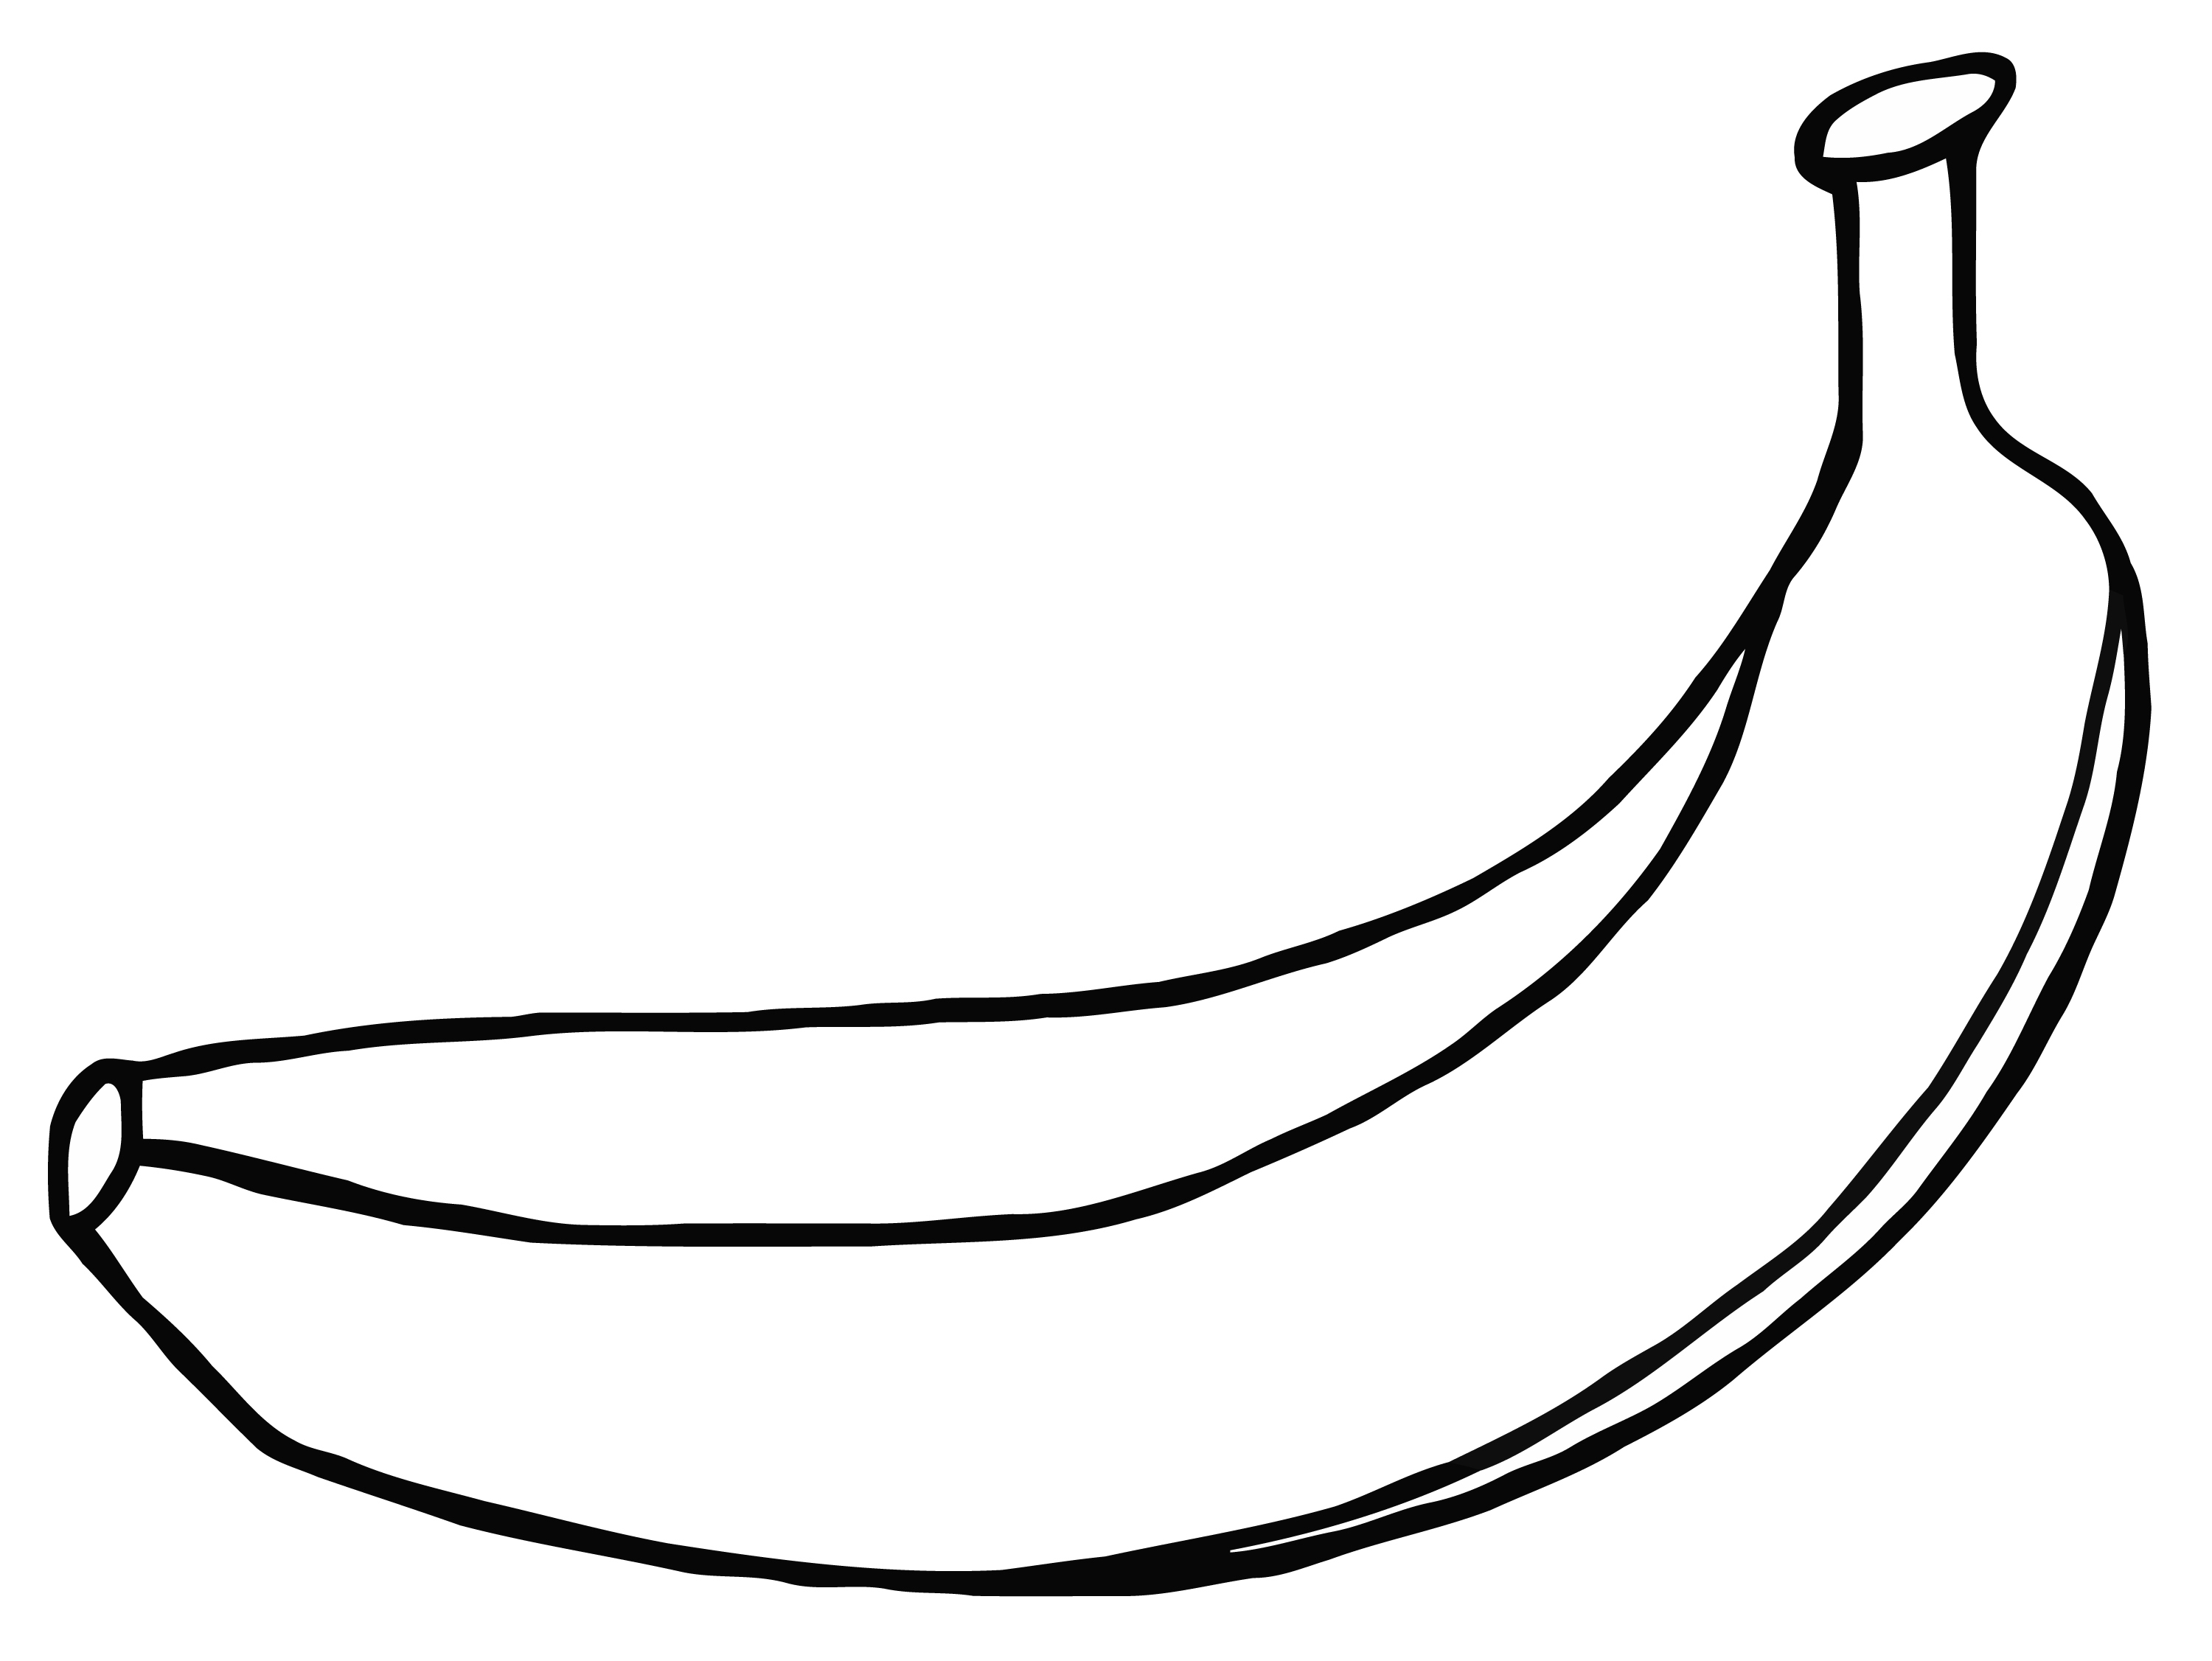 Banana image drawing template. Bananas clipart colored